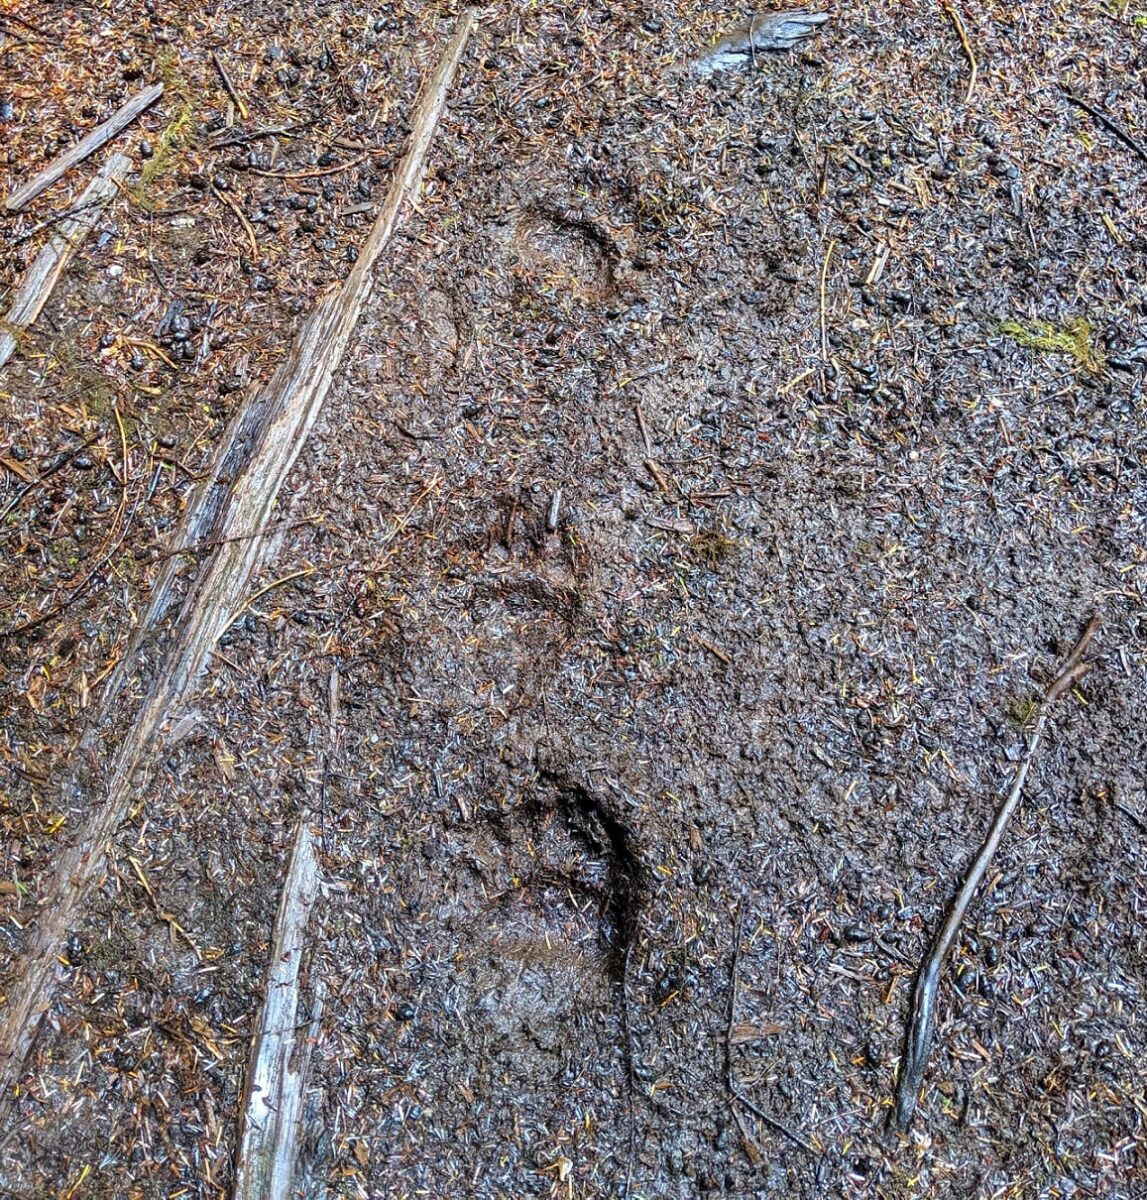 在温哥华岛斯科特角小径的泥/土上有黑熊的爪印